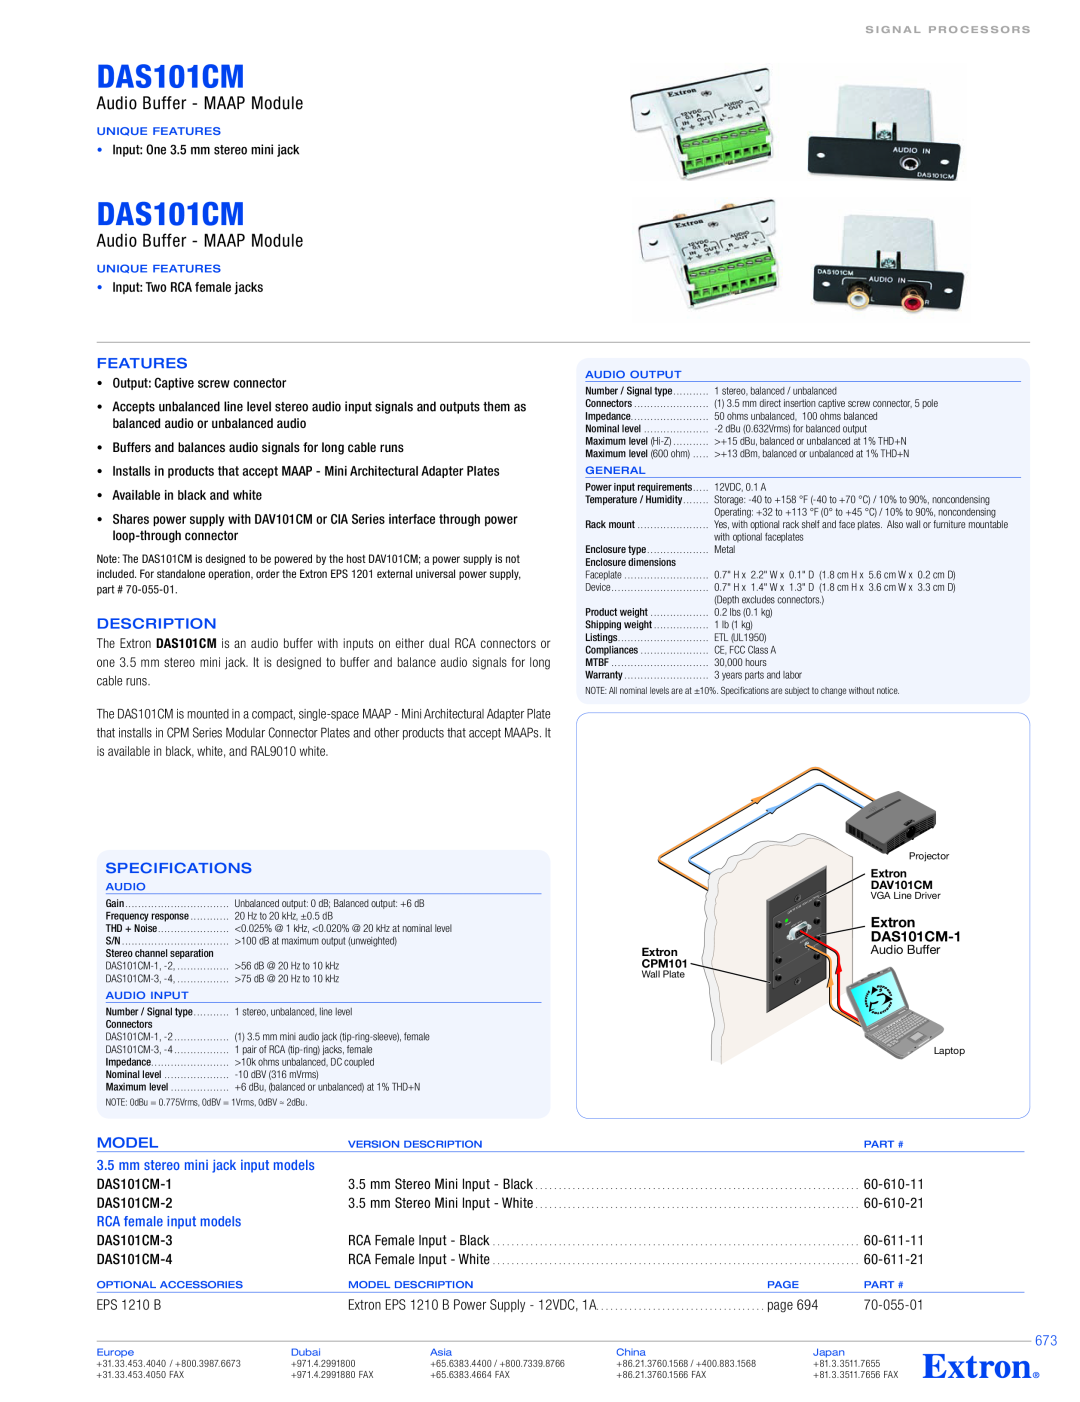 Extron electronic DAS101CM-3, DAS101CM-4, DAS101CM-2 specifications Audio Buffer - MAAP Module, Extron, DAS101CM-1 